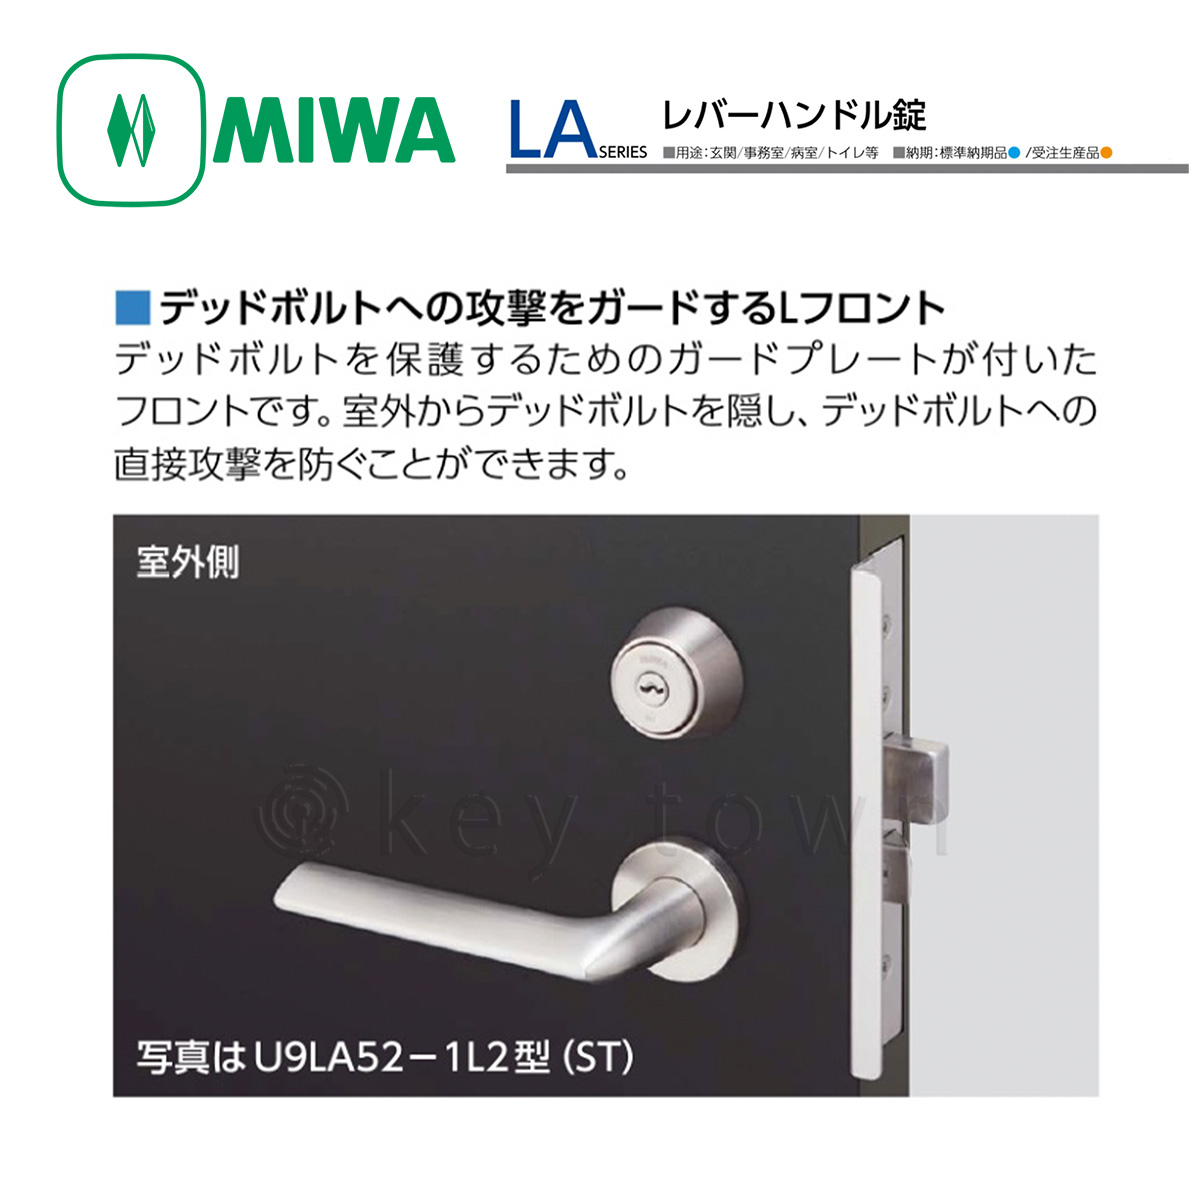 MIWA 【美和ロック】 レバーハンドル [MIWA-LA] U9LA52-1[MIWALA]｜鍵 